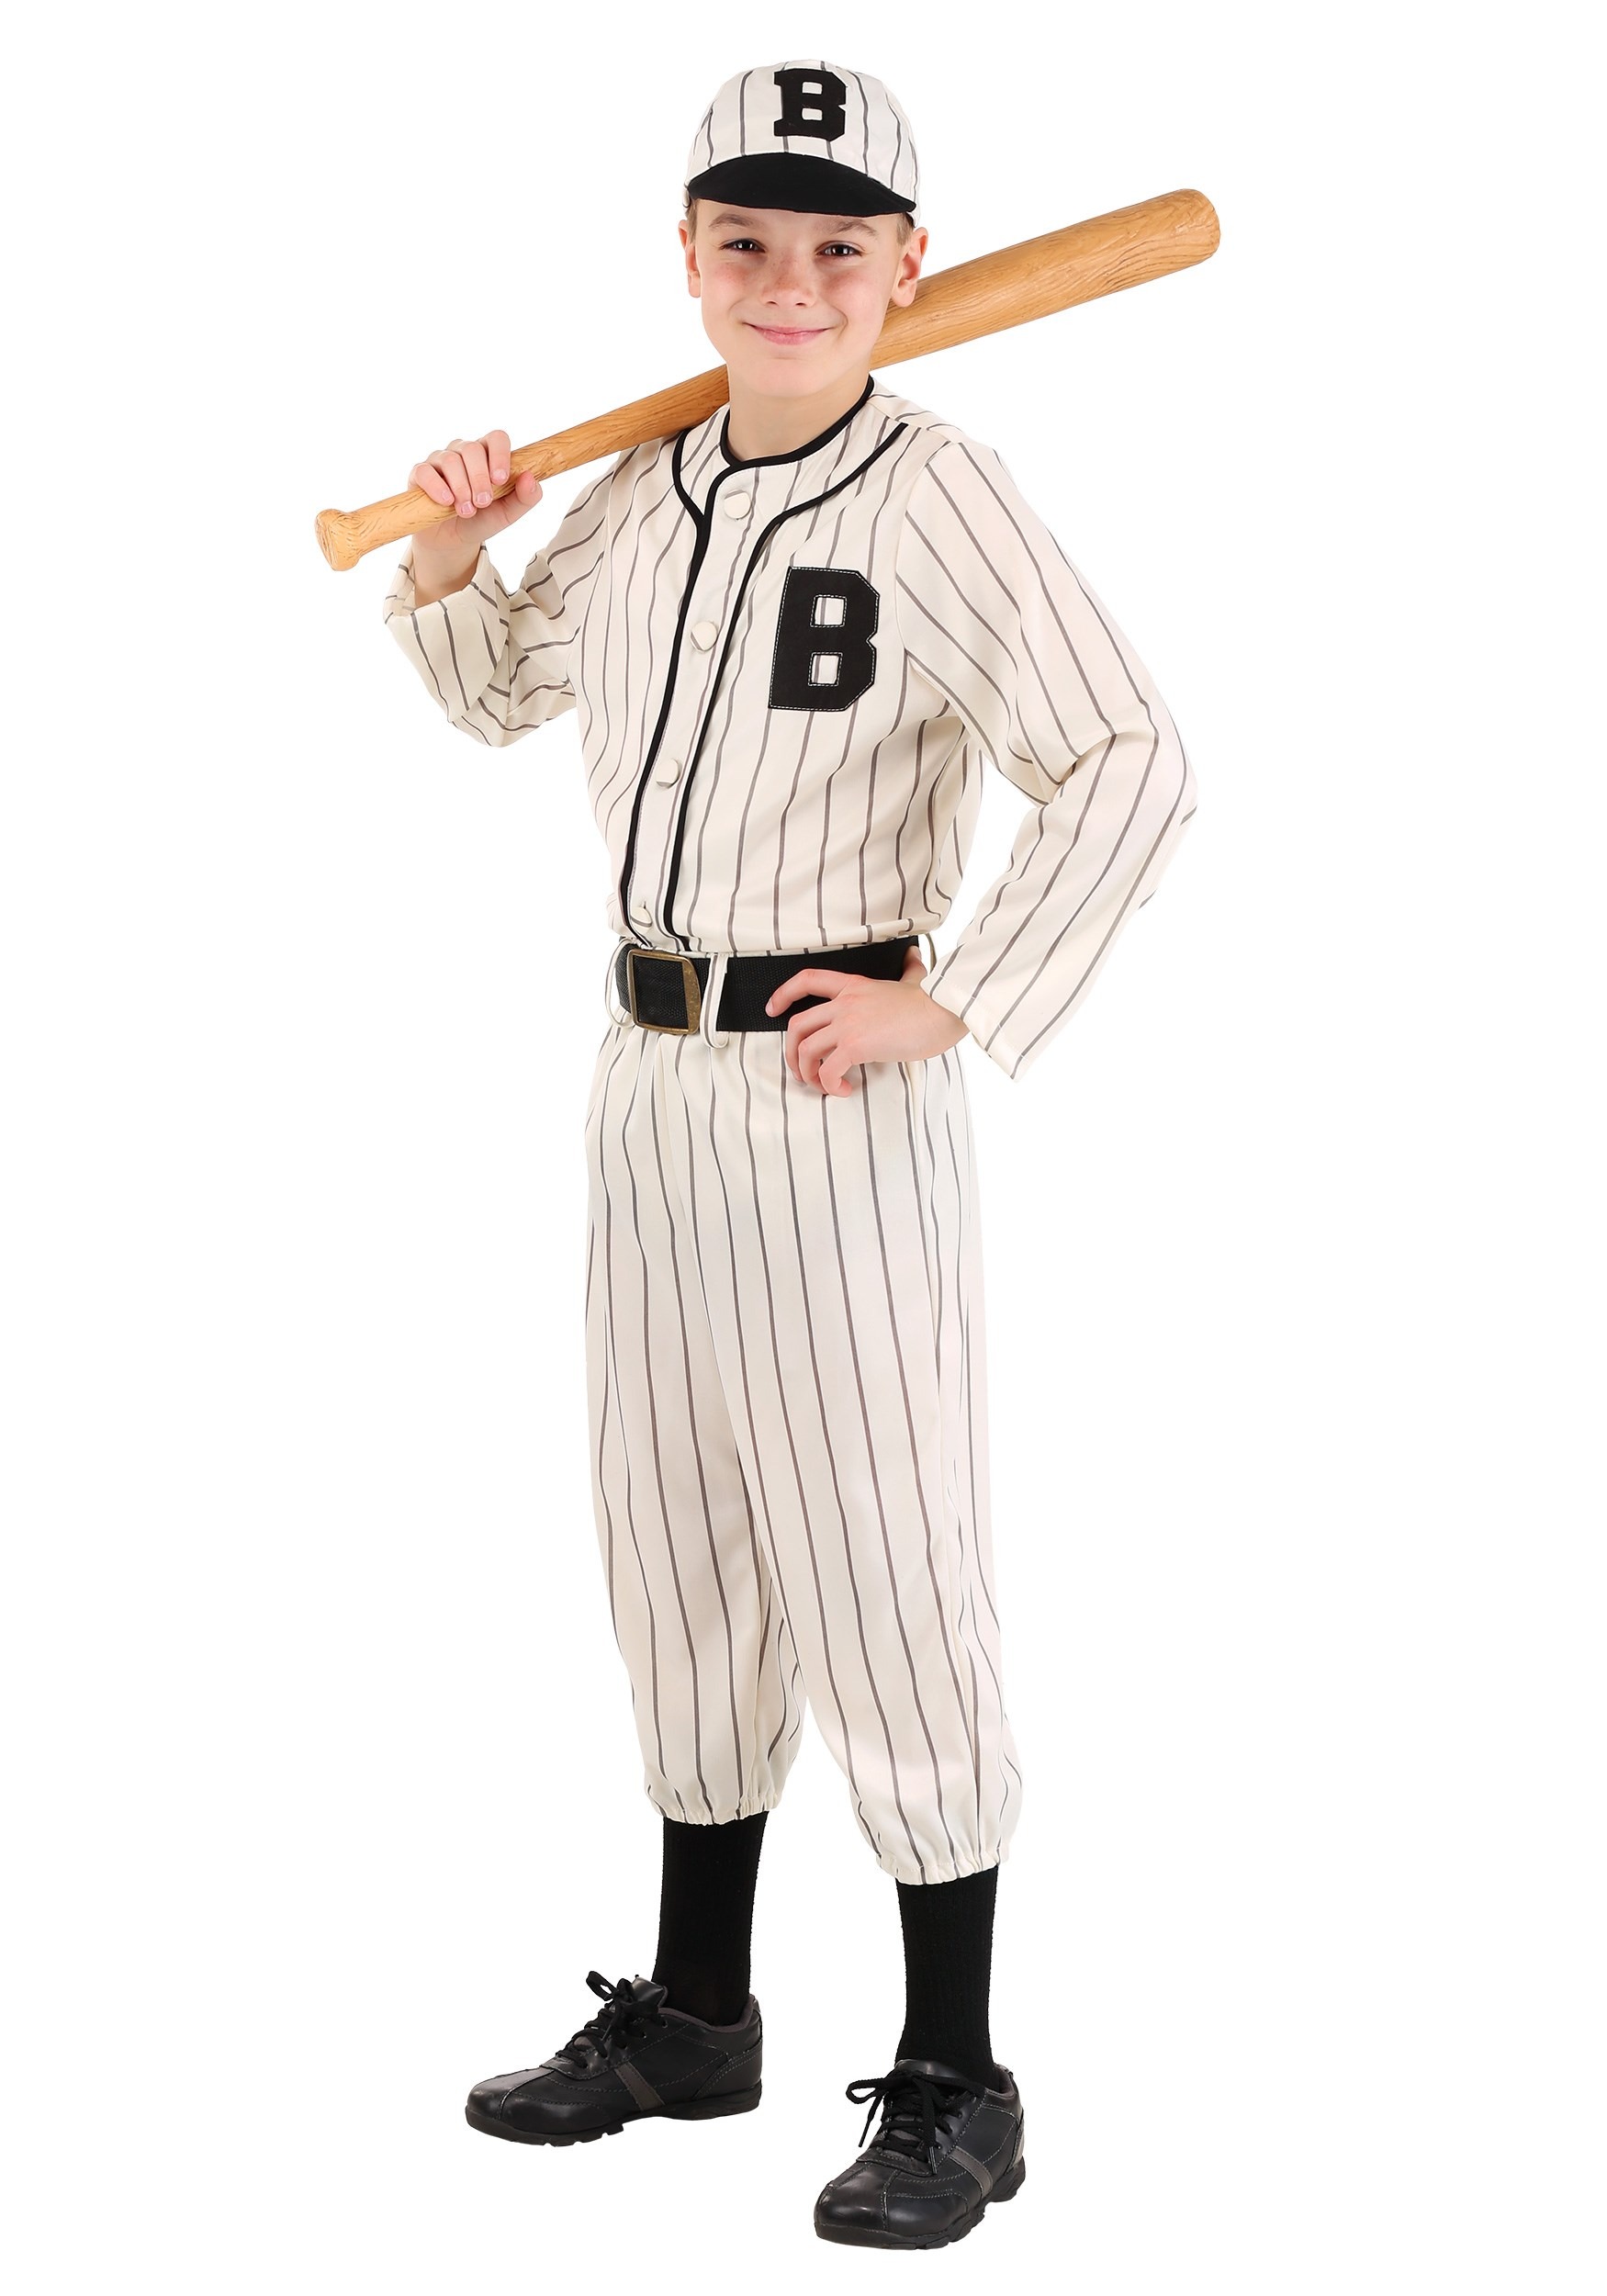 Home Run Hottie Costume, Baseball Player Costume, Women Sports